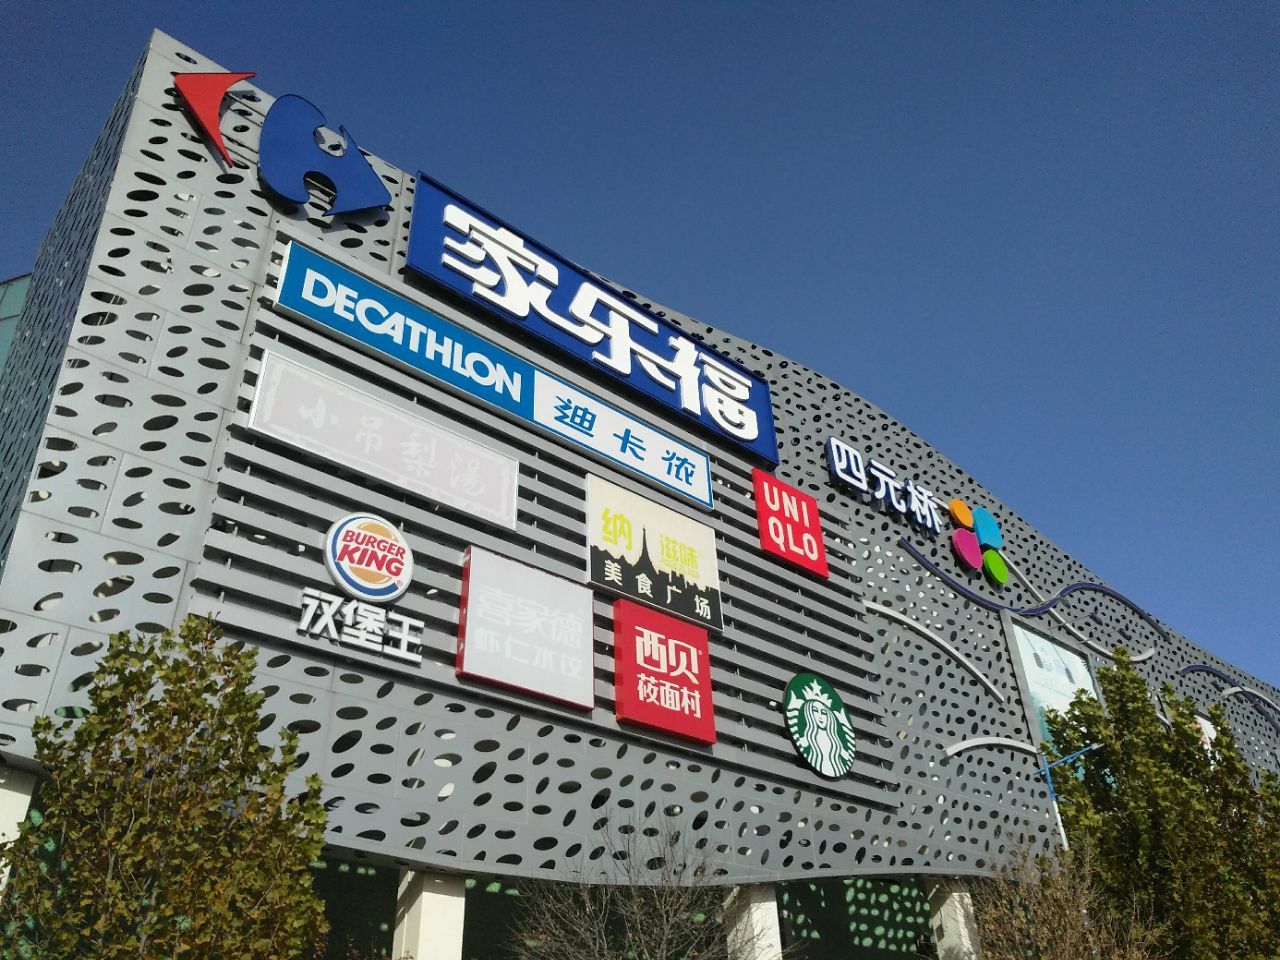 【携程攻略】北京四元桥购物中心购物,四元桥购物中心虽然有点偏 但是